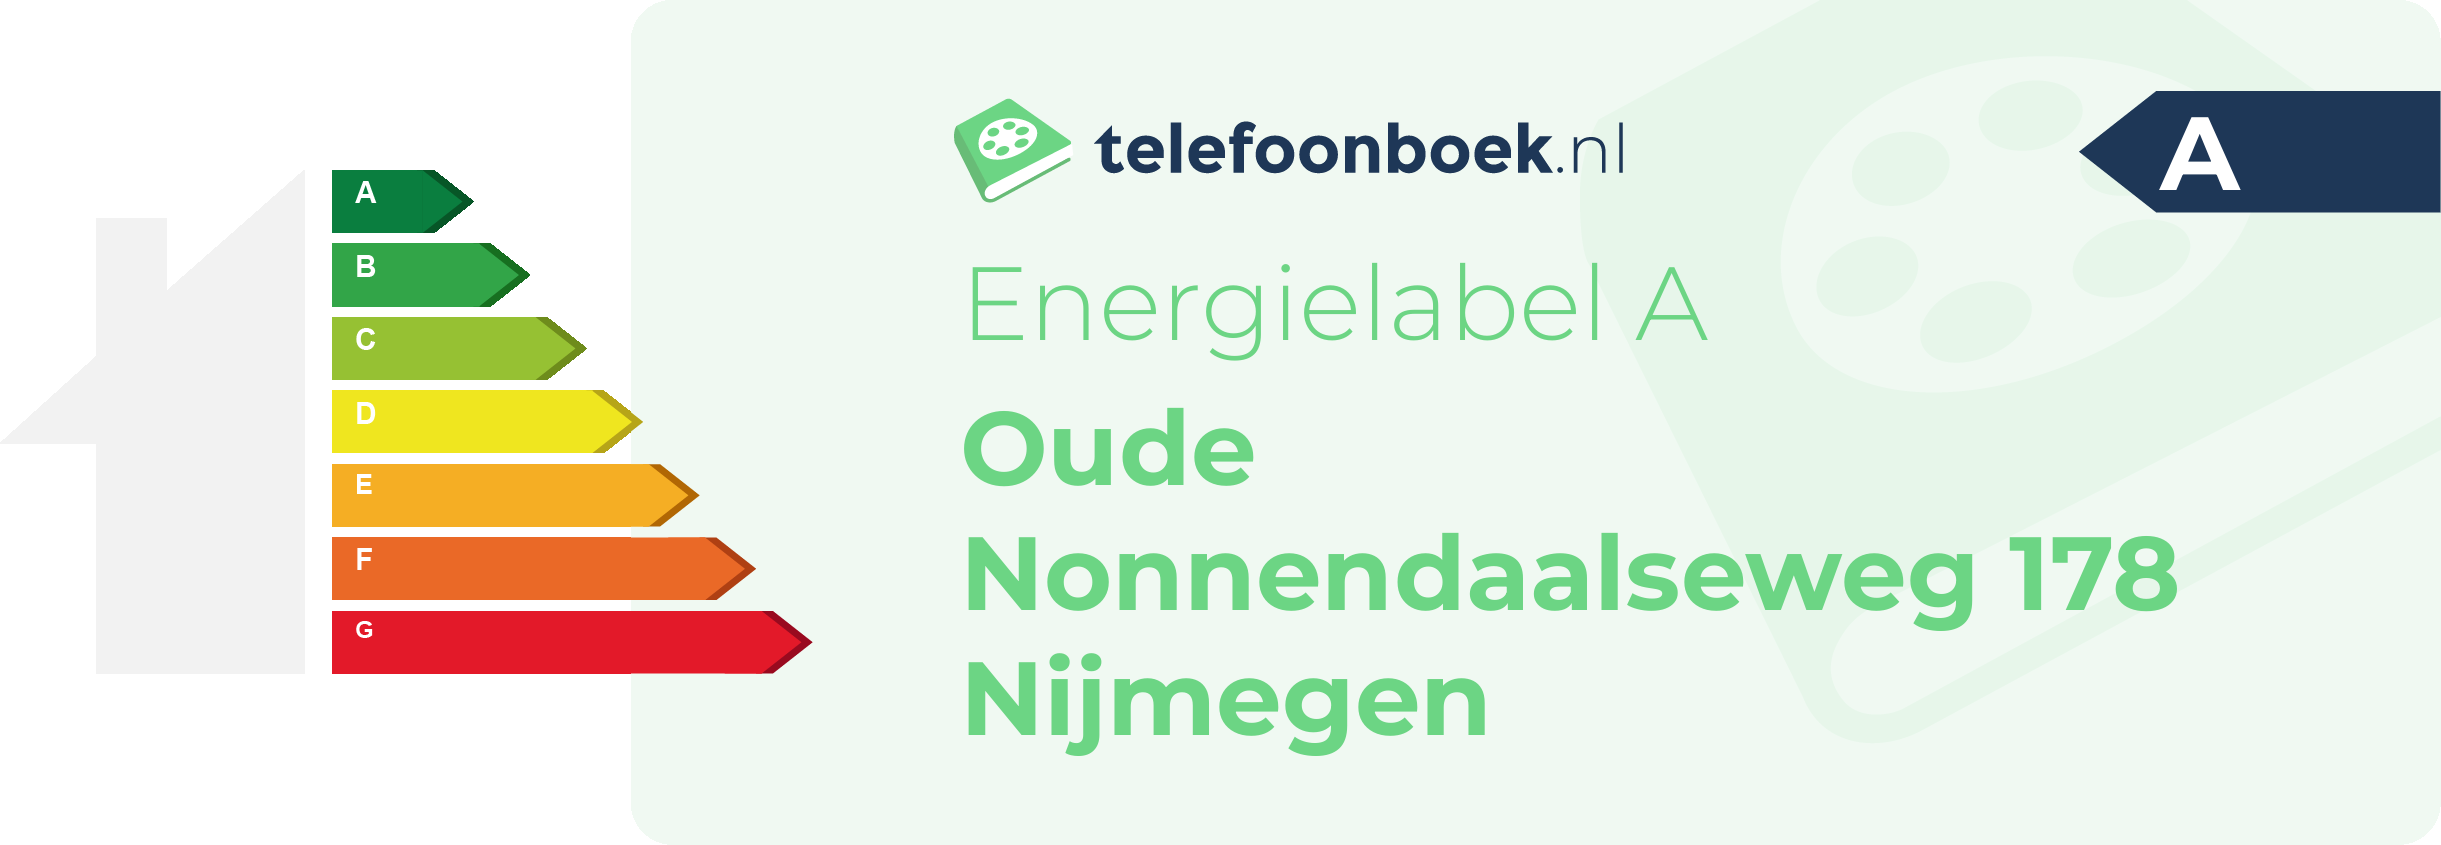 Energielabel Oude Nonnendaalseweg 178 Nijmegen